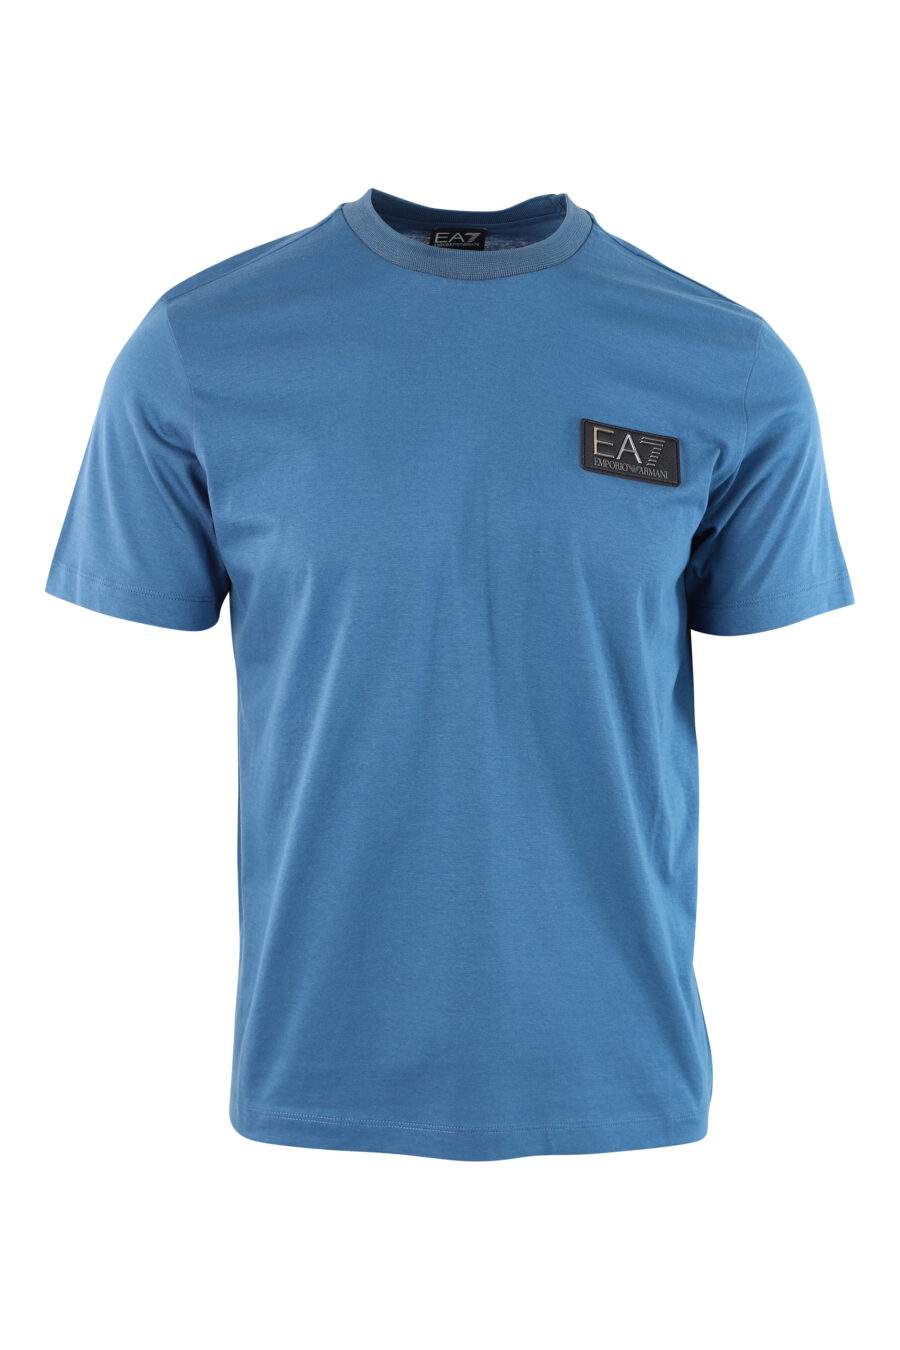 T-shirt azul clara com mini-logotipo no emblema - IMG 3797